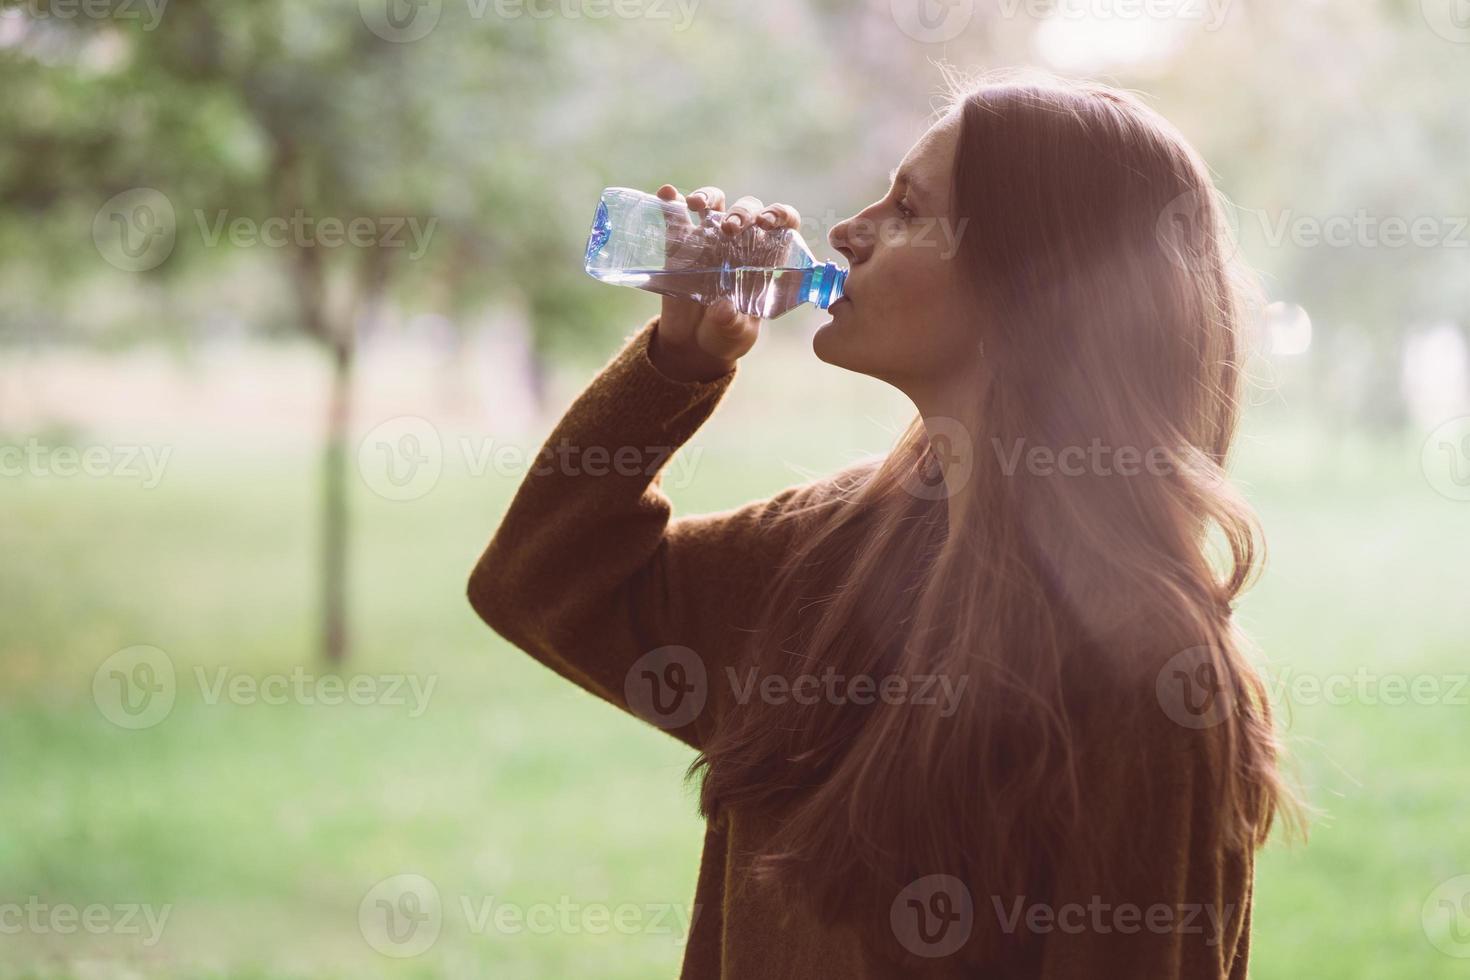 giovane bella ragazza che beve acqua da una bottiglia di plastica sulla strada nel parco in autunno o in inverno. una donna con bei capelli lunghi e folti scuri disseta la sua sete di acqua durante una passeggiata foto